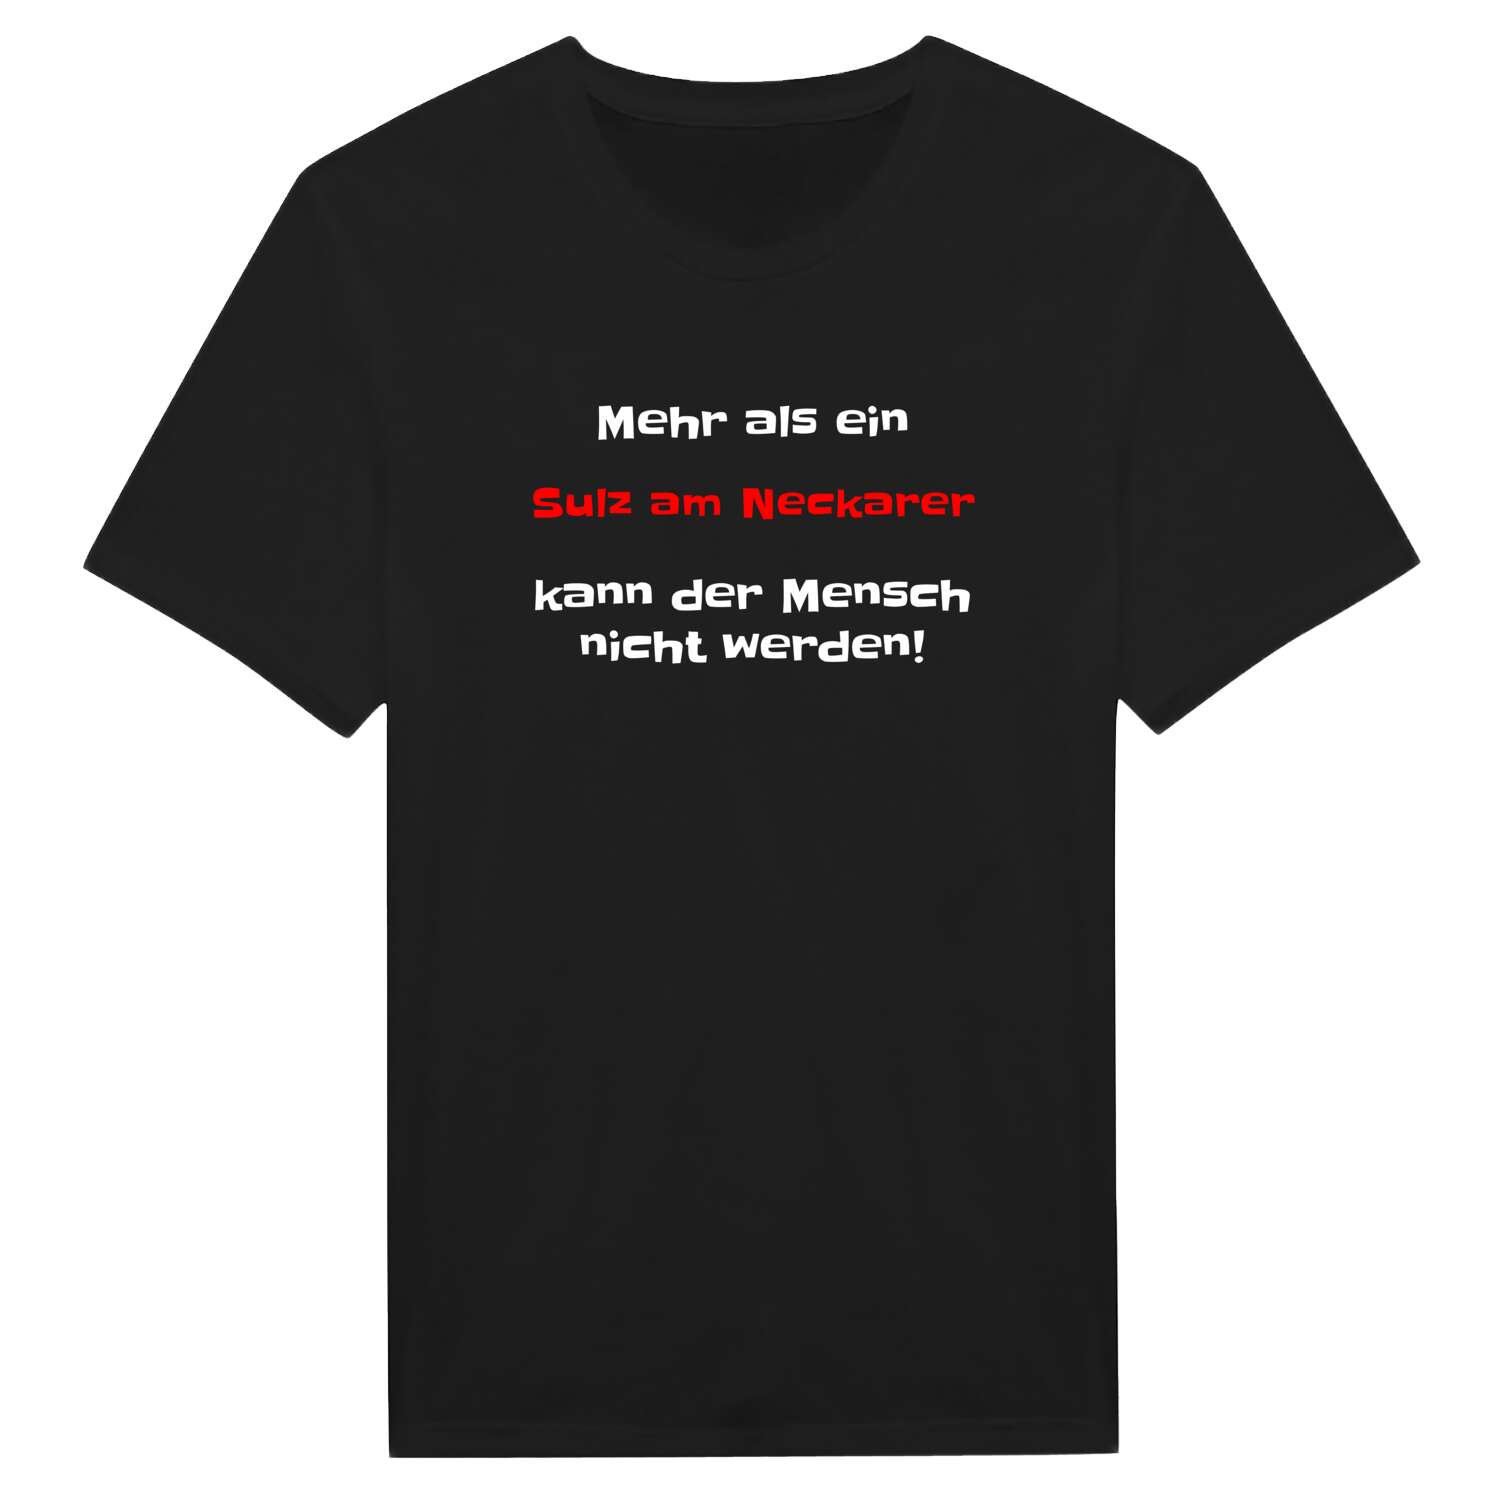 Sulz am Neckar T-Shirt »Mehr als ein«